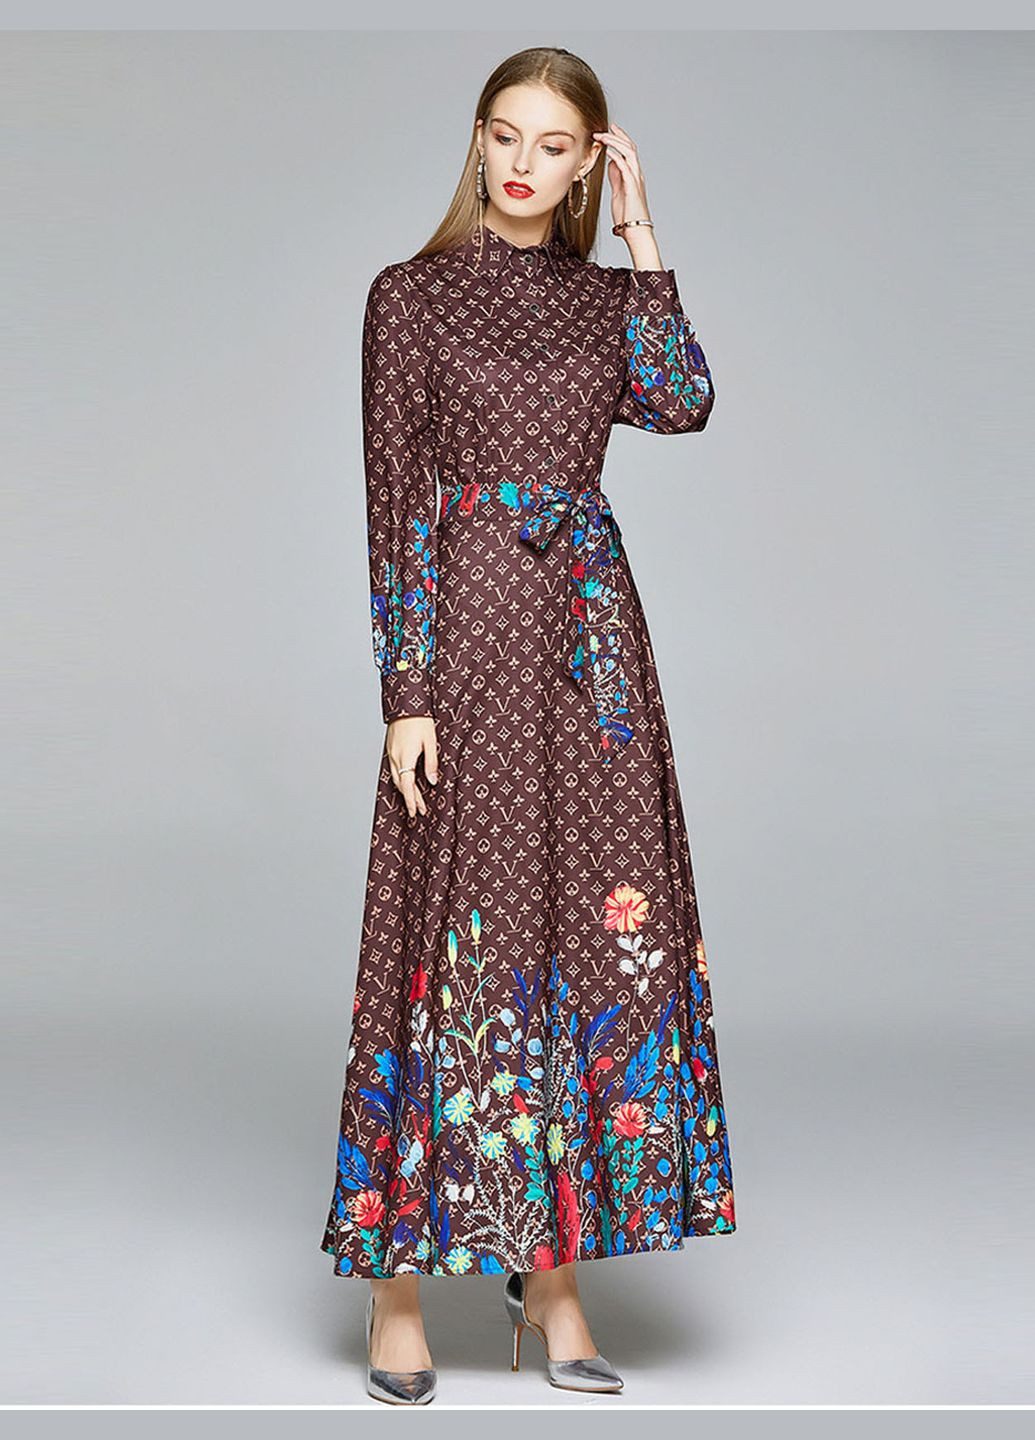 Коричневое вечернее платье принтовое макси lw-216 коричневый Lowett с цветочным принтом